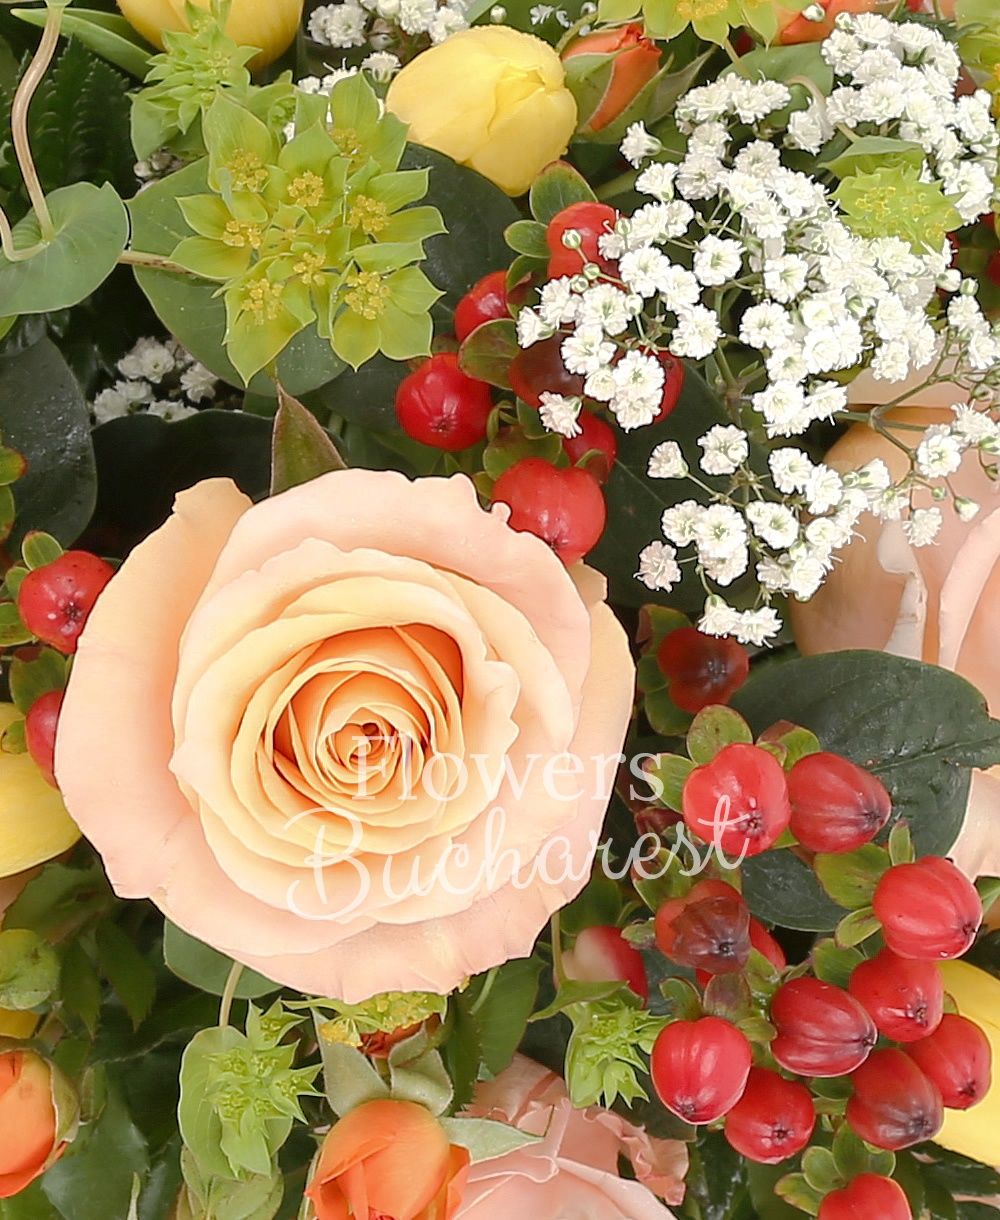 6 cream roses, 5 orange miniroses, 3 red hypericum, 7 yellow tulips, greenery